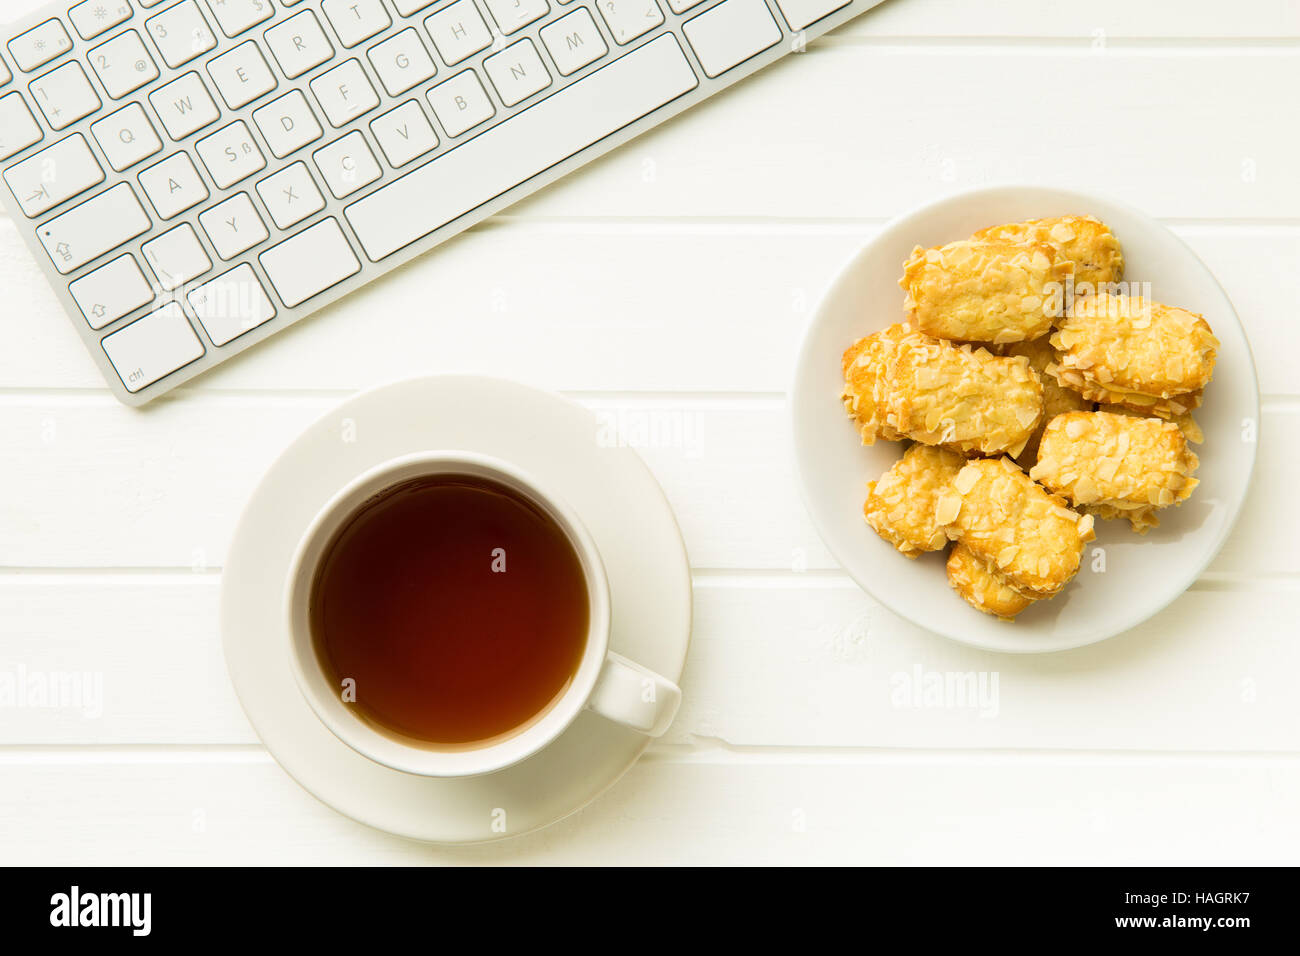 Pause pour le thé et biscuits aux amandes au bureau. Concept avec thé, biscuits et clavier de l'ordinateur. Banque D'Images